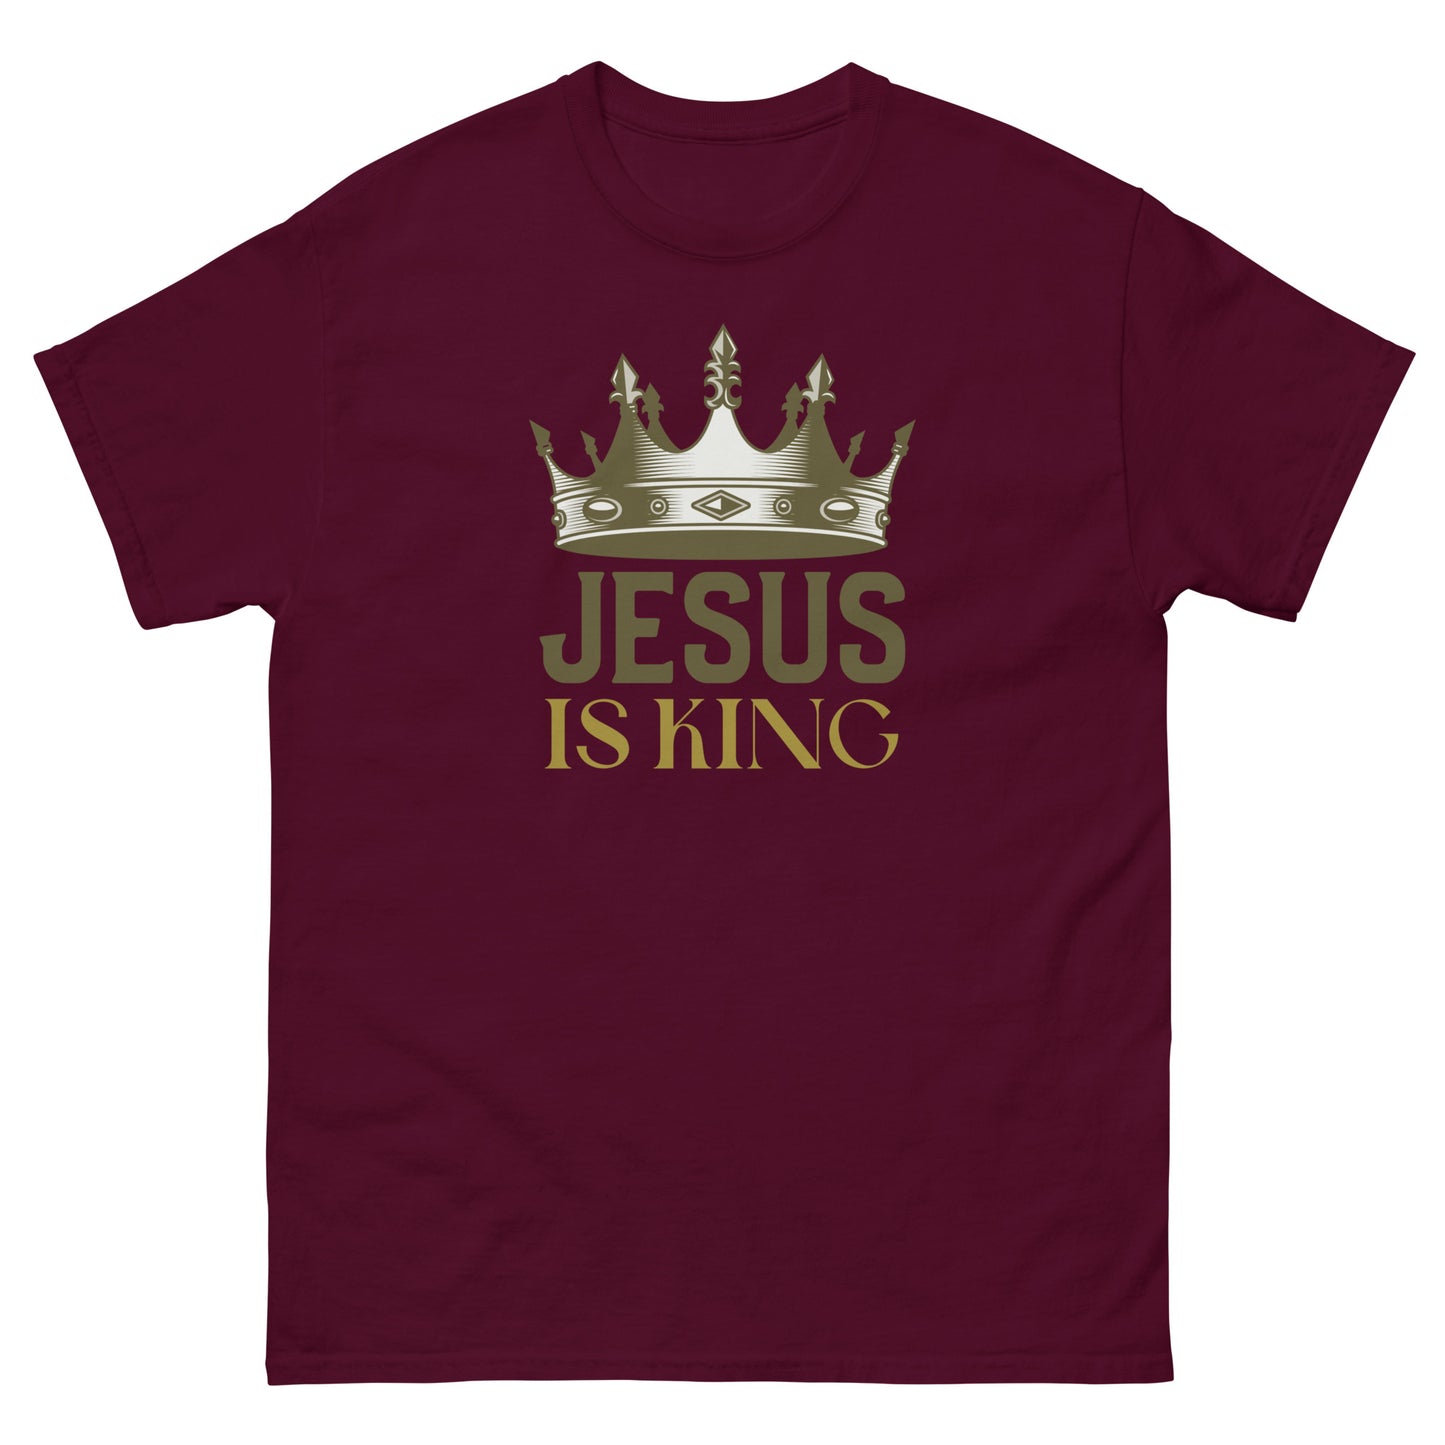 Jesus is KING 2.0 - Men's classic tee